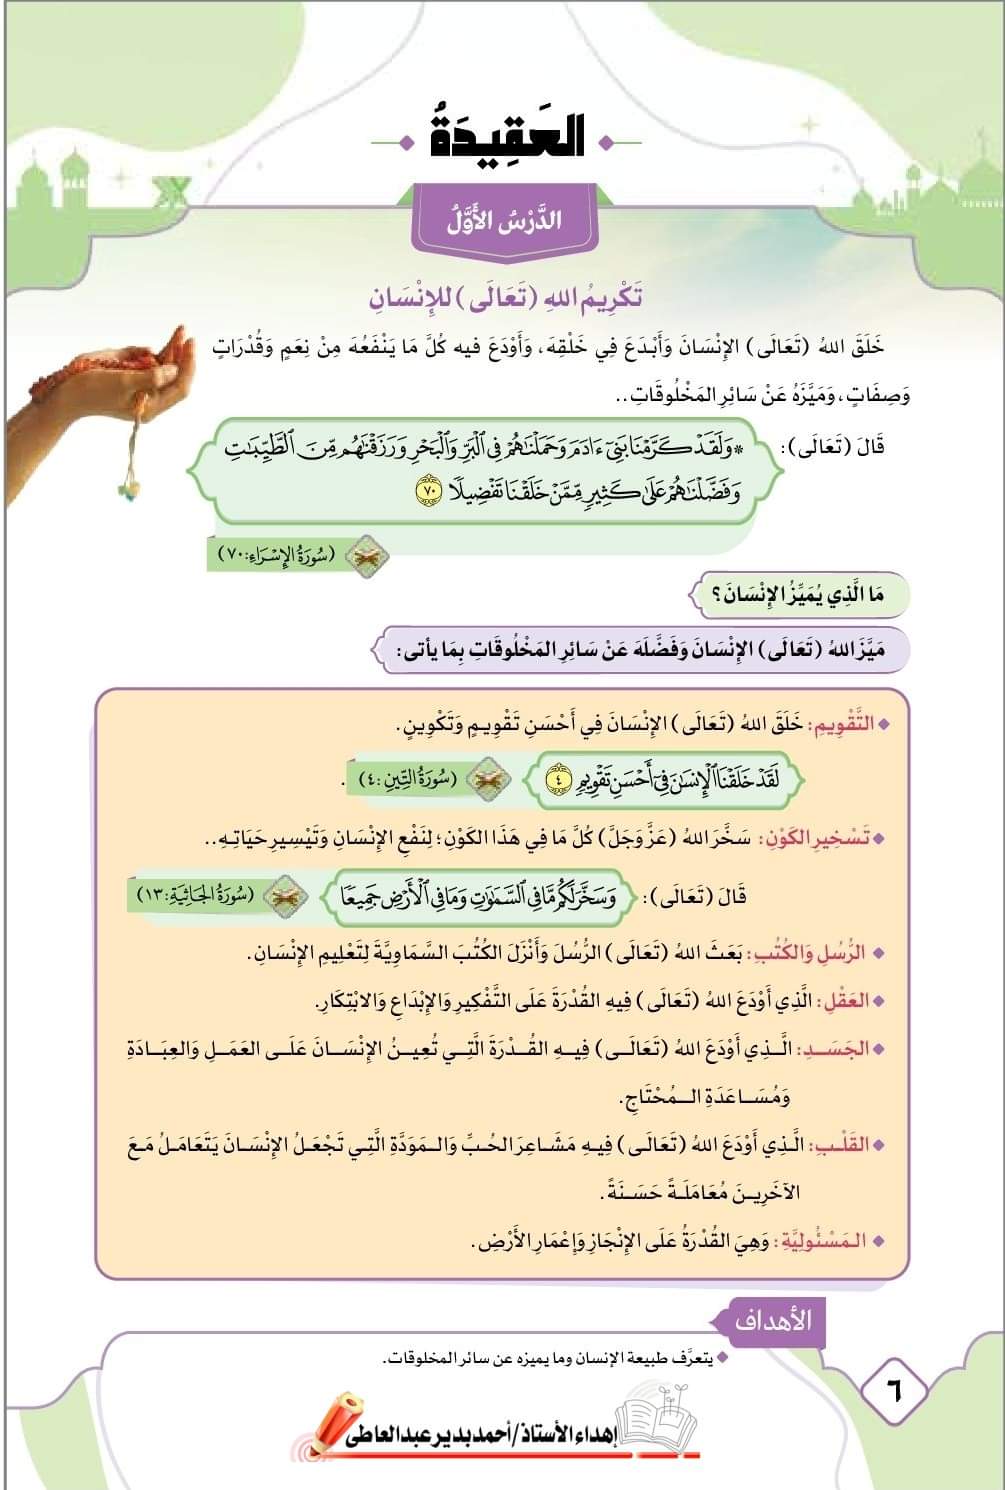 تحميل كتاب التربية الاسلامية للصف السادس الابتدائي نظام جديد ترم اول